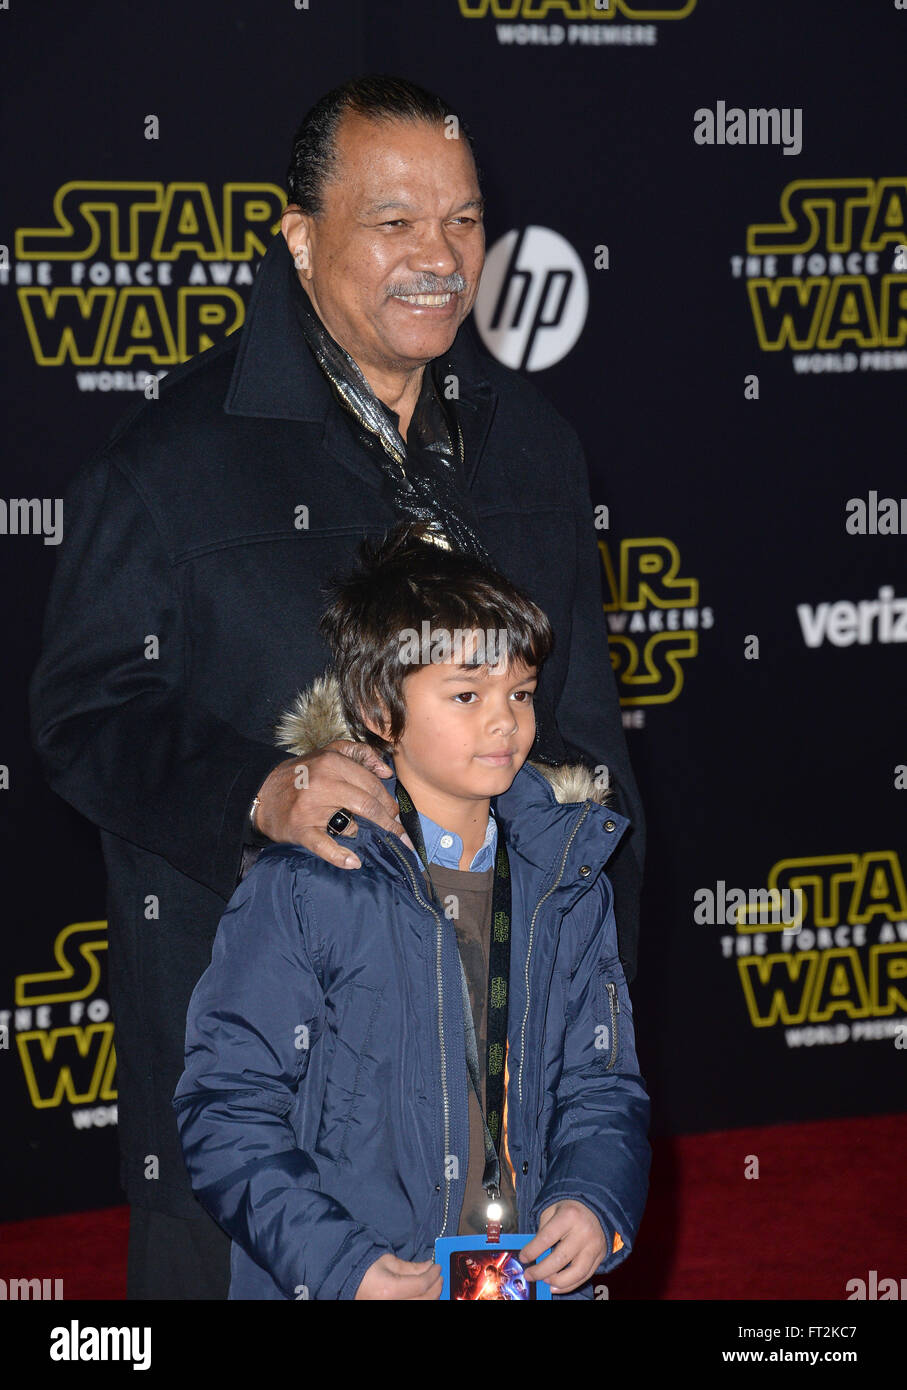 LOS ANGELES, CA - le 14 décembre 2015 : l'acteur Billy Dee Williams & petit-fils lors de la première mondiale de 'Star Wars : The Force éveille' sur Hollywood Boulevard Banque D'Images